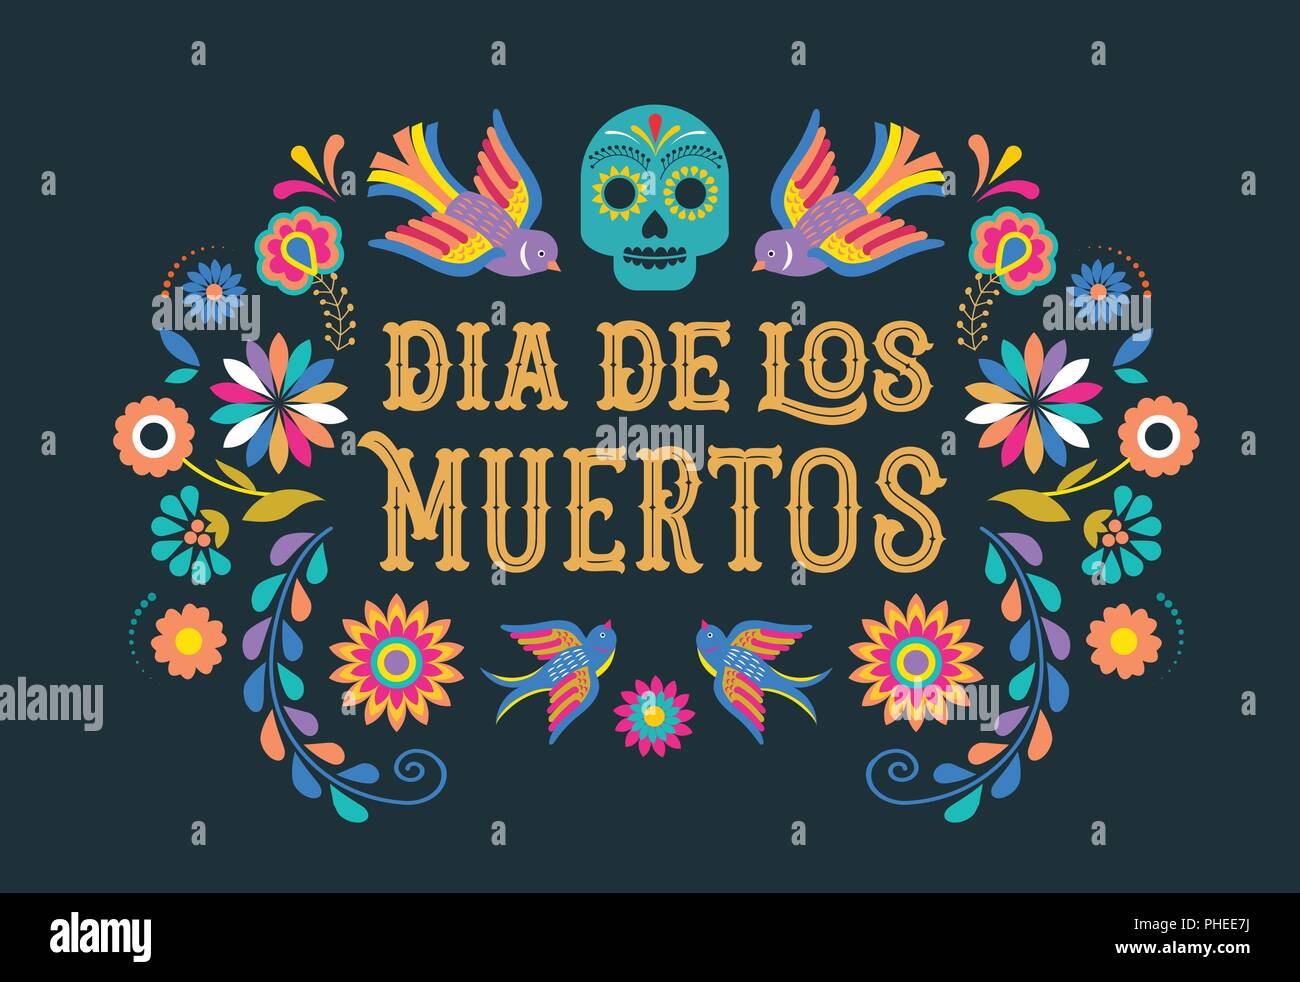 Fête des morts, Dia de los, moertos avec bannière fleurs mexicaines colorées. Fiesta, maison de vacances, partie de l'affiche flyer, cartes de vœux Illustration de Vecteur